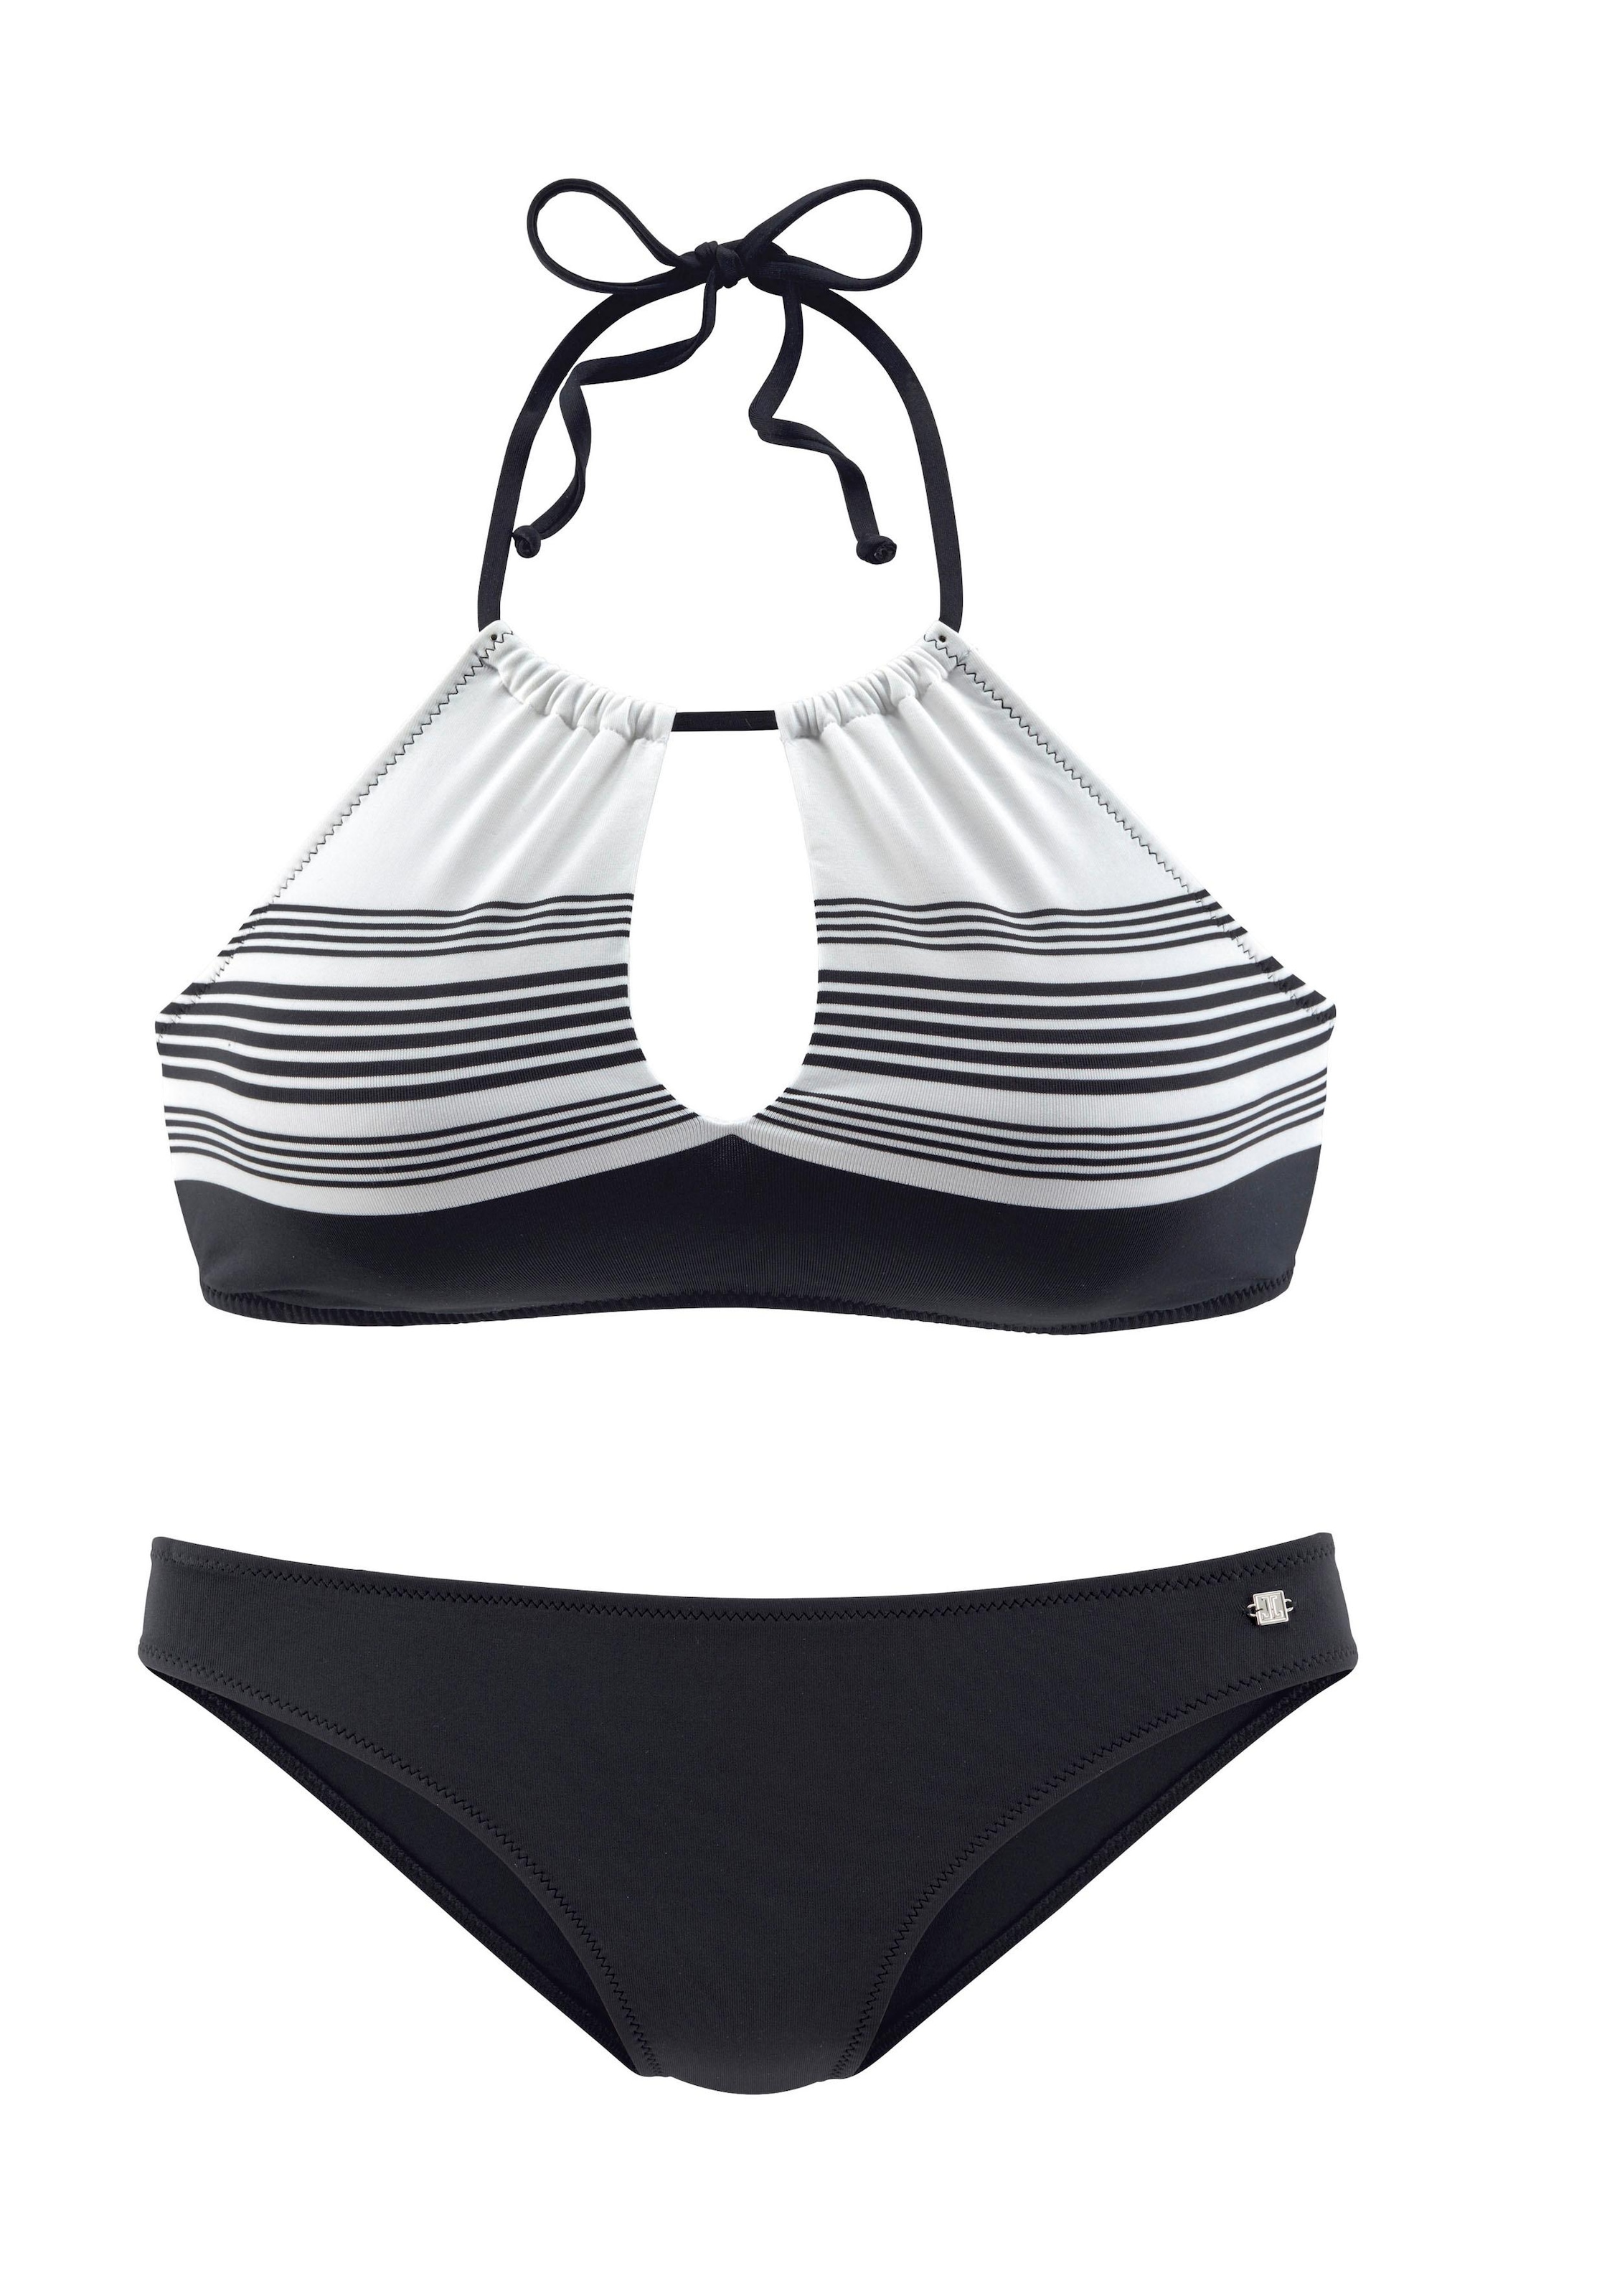 JETTE Bustier-Bikini, mit » Lingerie hochwertigem | LASCANA Bademode, Unterwäsche online kaufen Design 